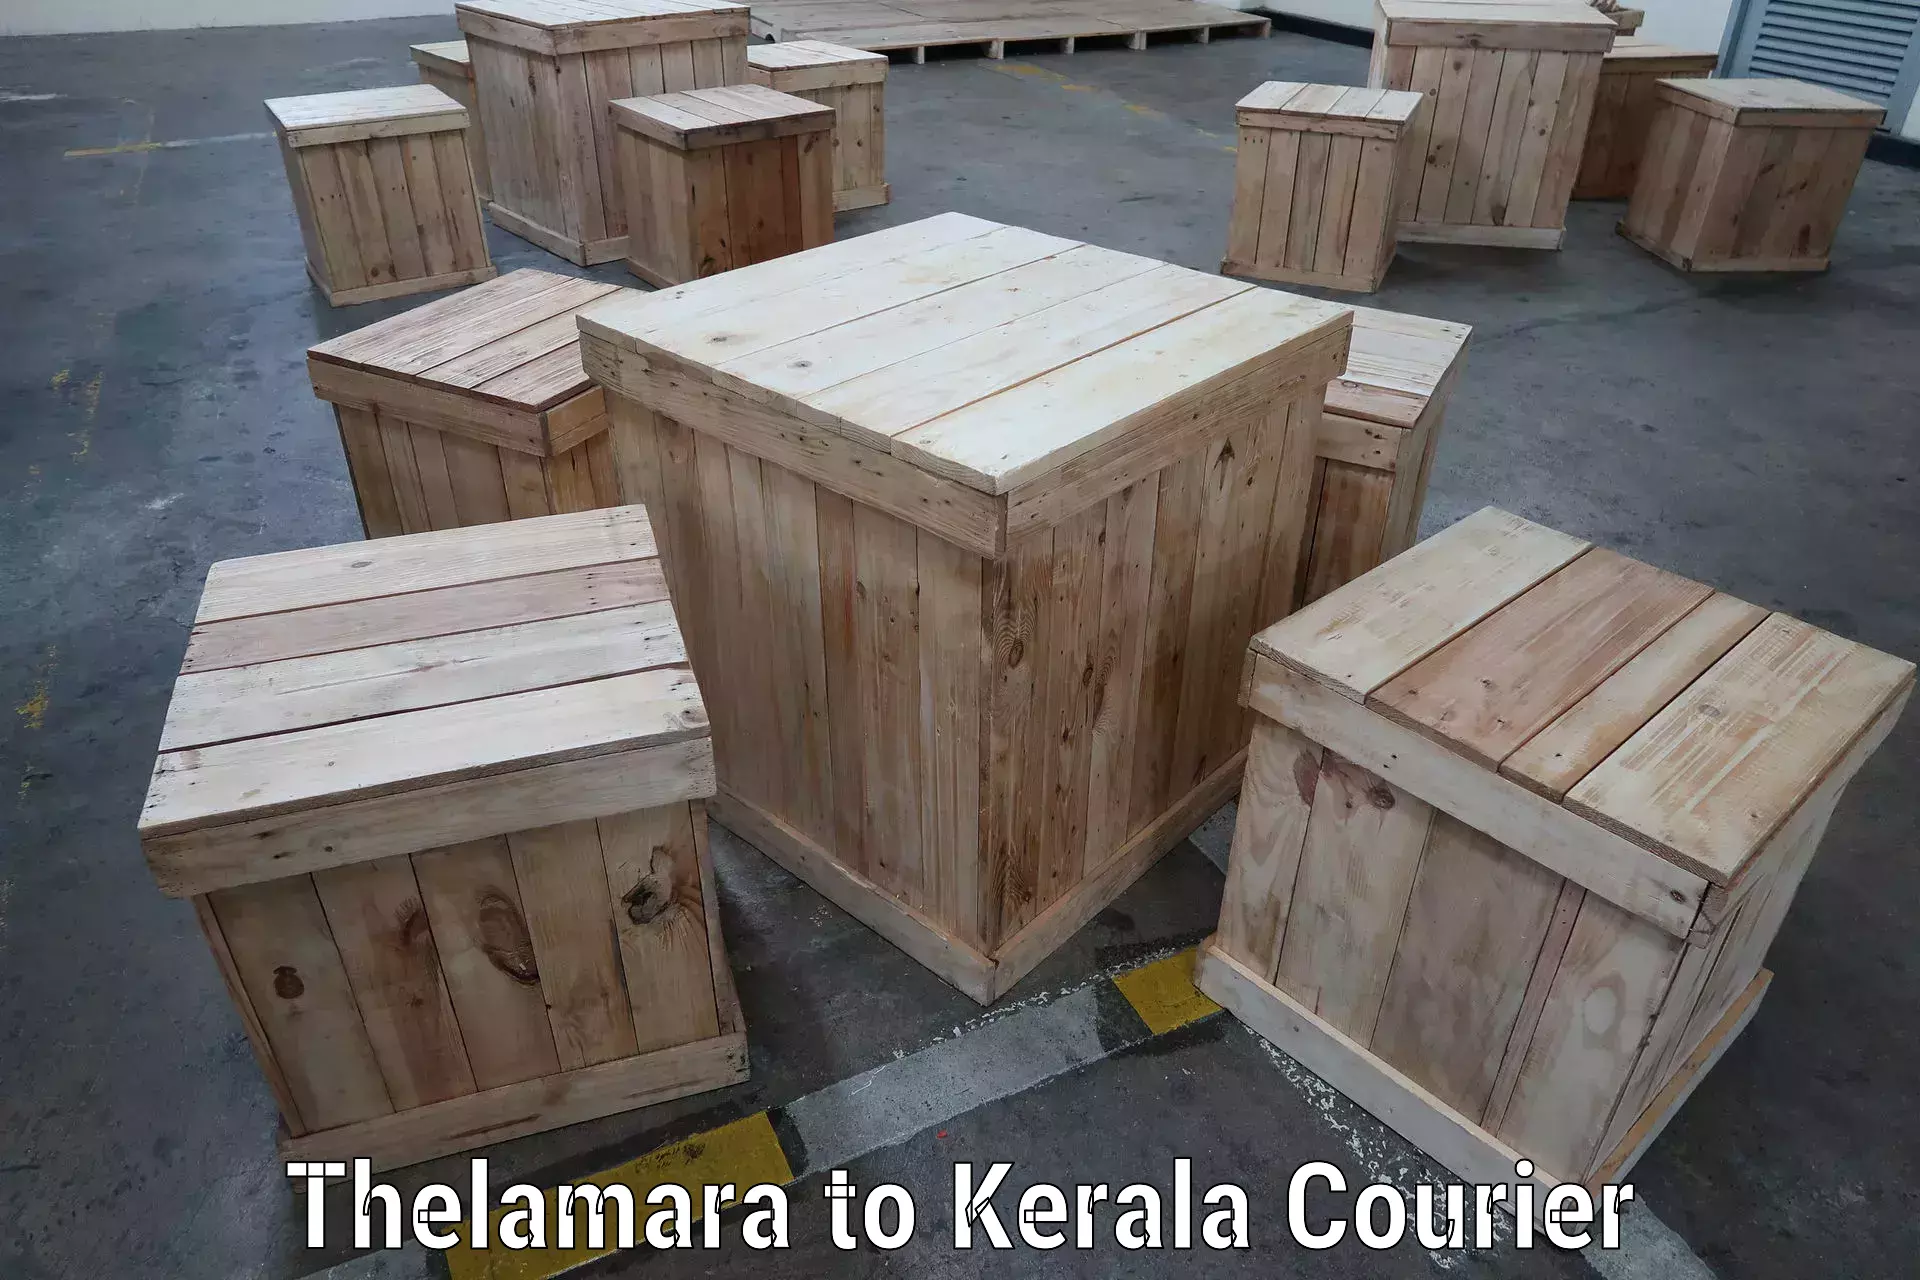 Global shipping solutions Thelamara to Haripad